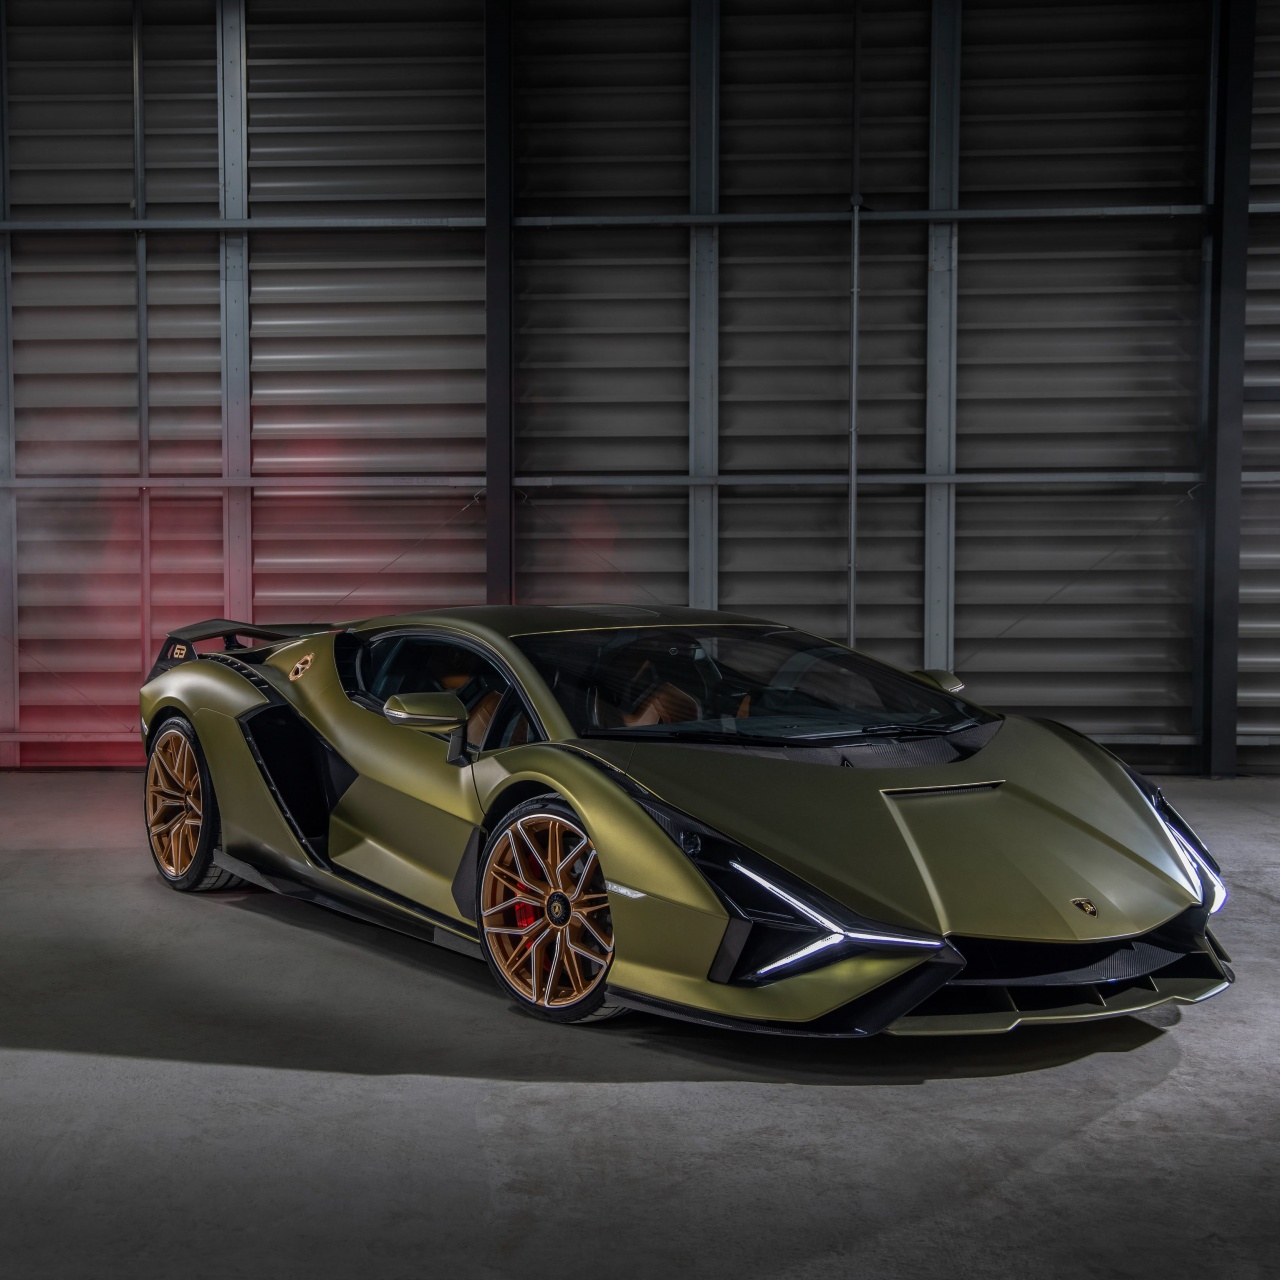 Lamborghini Sián FKP 37 Wallpaper 4K, Futuristic, 2021, 5K